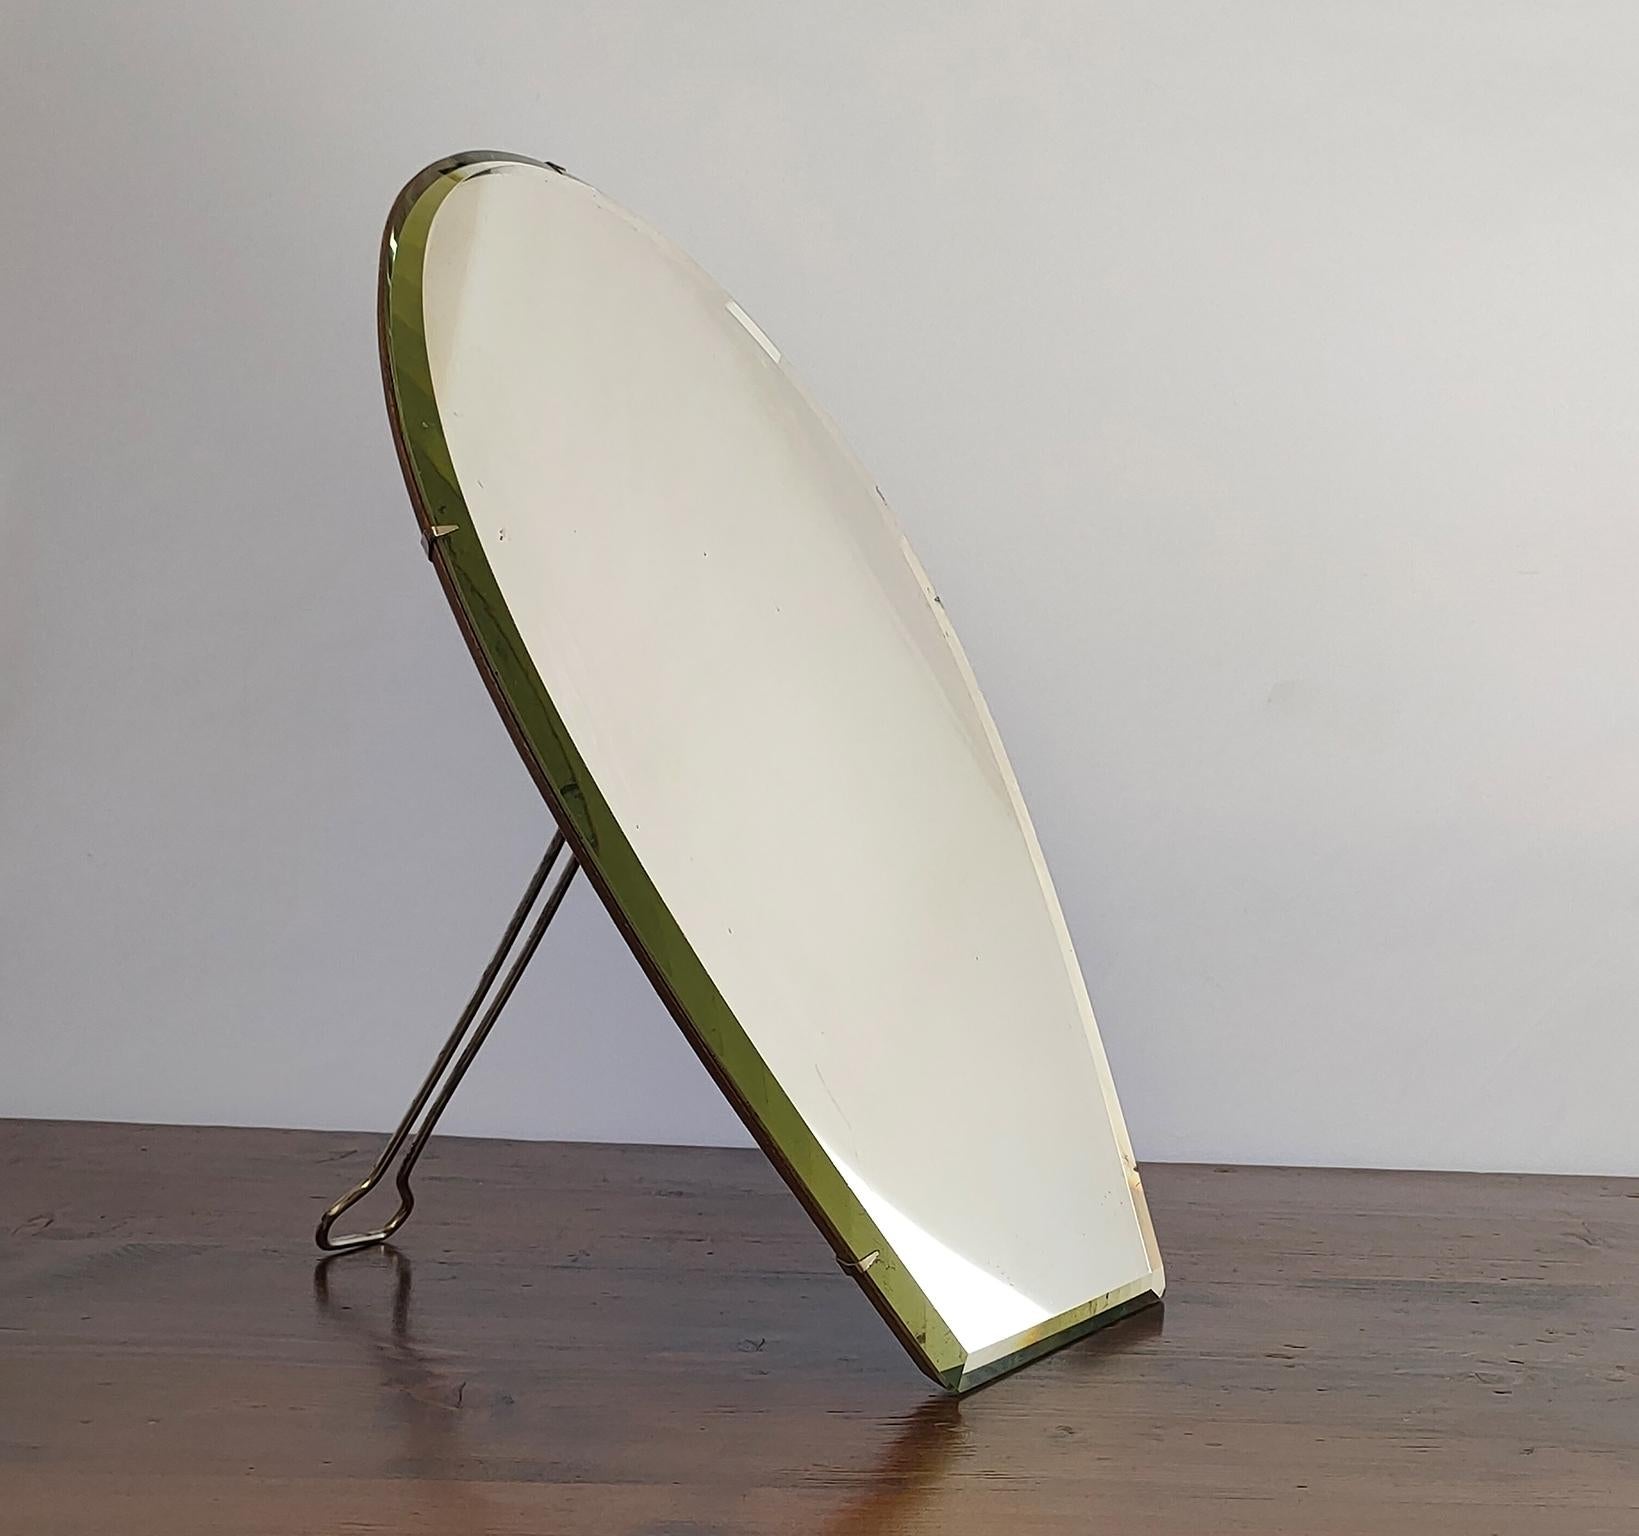 Ravissant miroir de table ou de courtoisie du début du XXe siècle, conçu et produit par la société verrière The Table Company/One en 1881 à Milan par Carlo Tenca. 
Le miroir présente la marque du fabricant au dos ''TENCA & C. MILANO''
Ce miroir